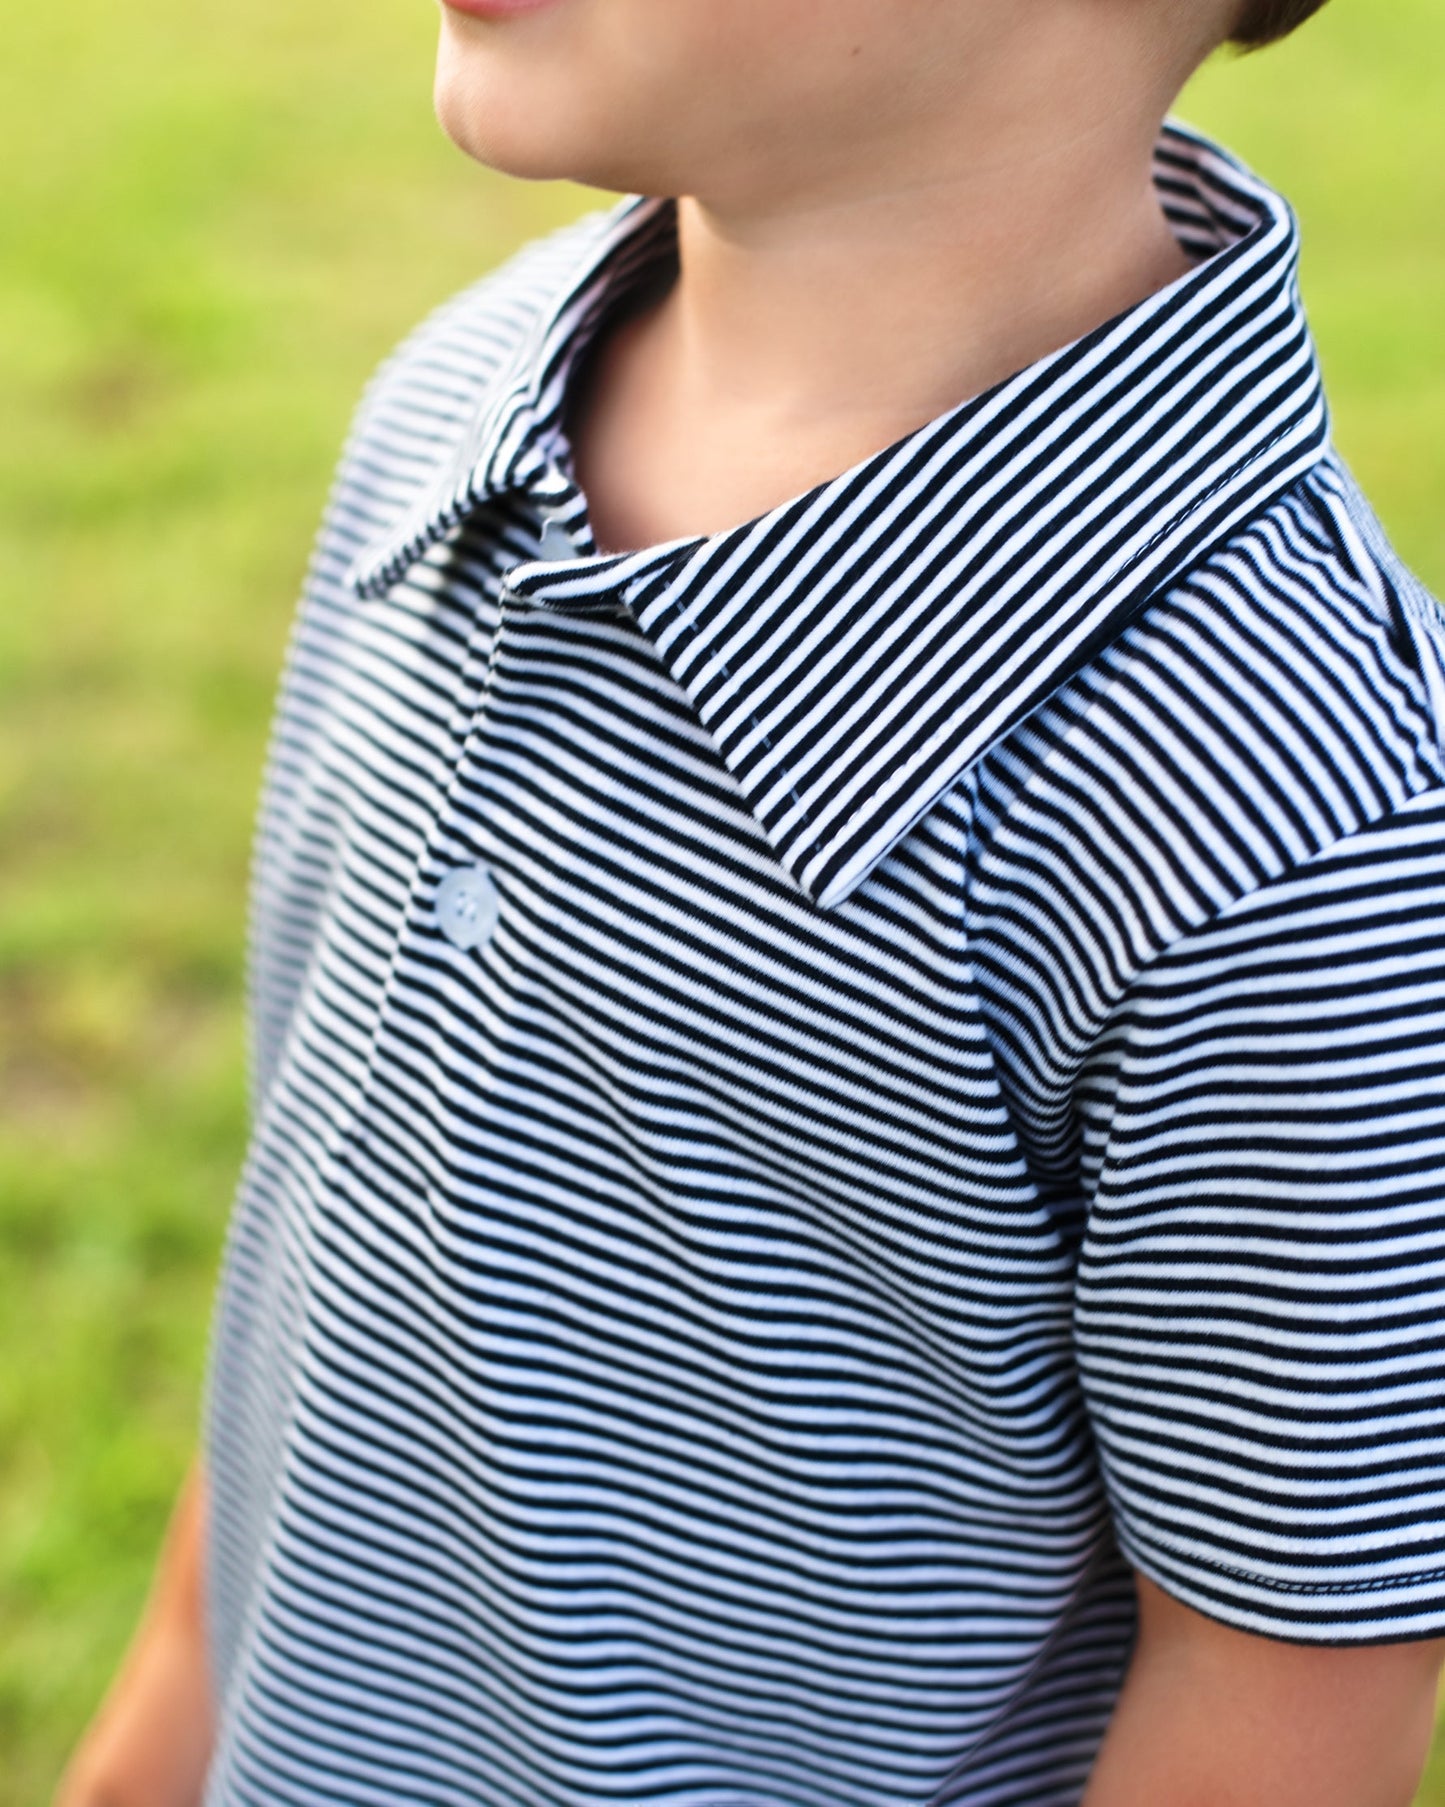 Boys Polo Shirt - Navy Stripe